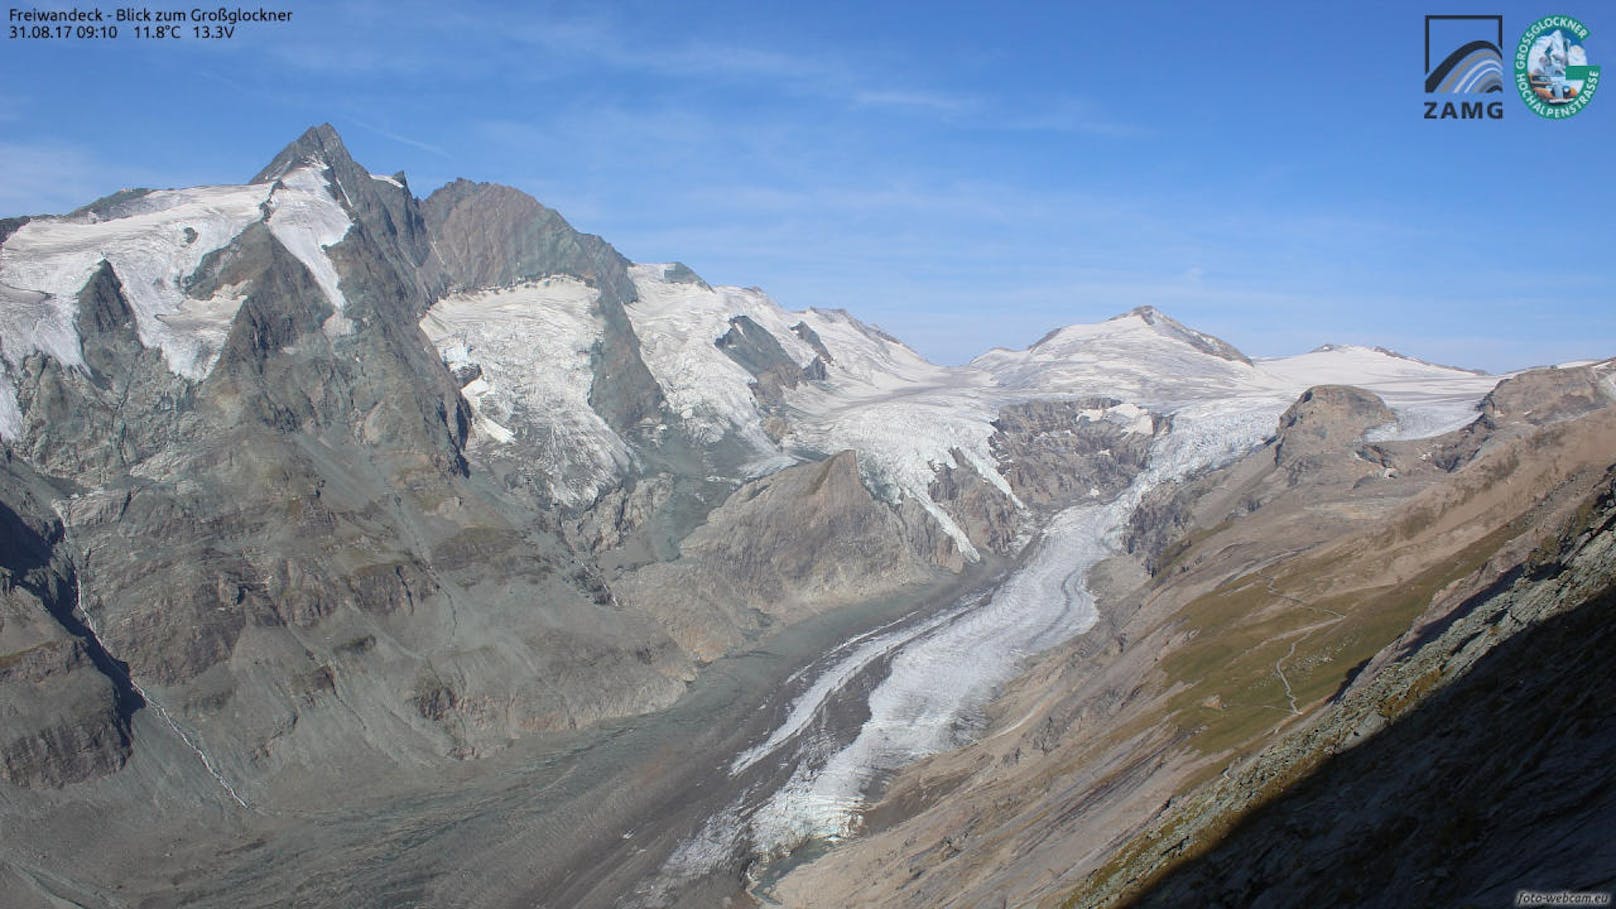 Alpen haben 4,8 Gigatonnen ihrer Eismasse verloren